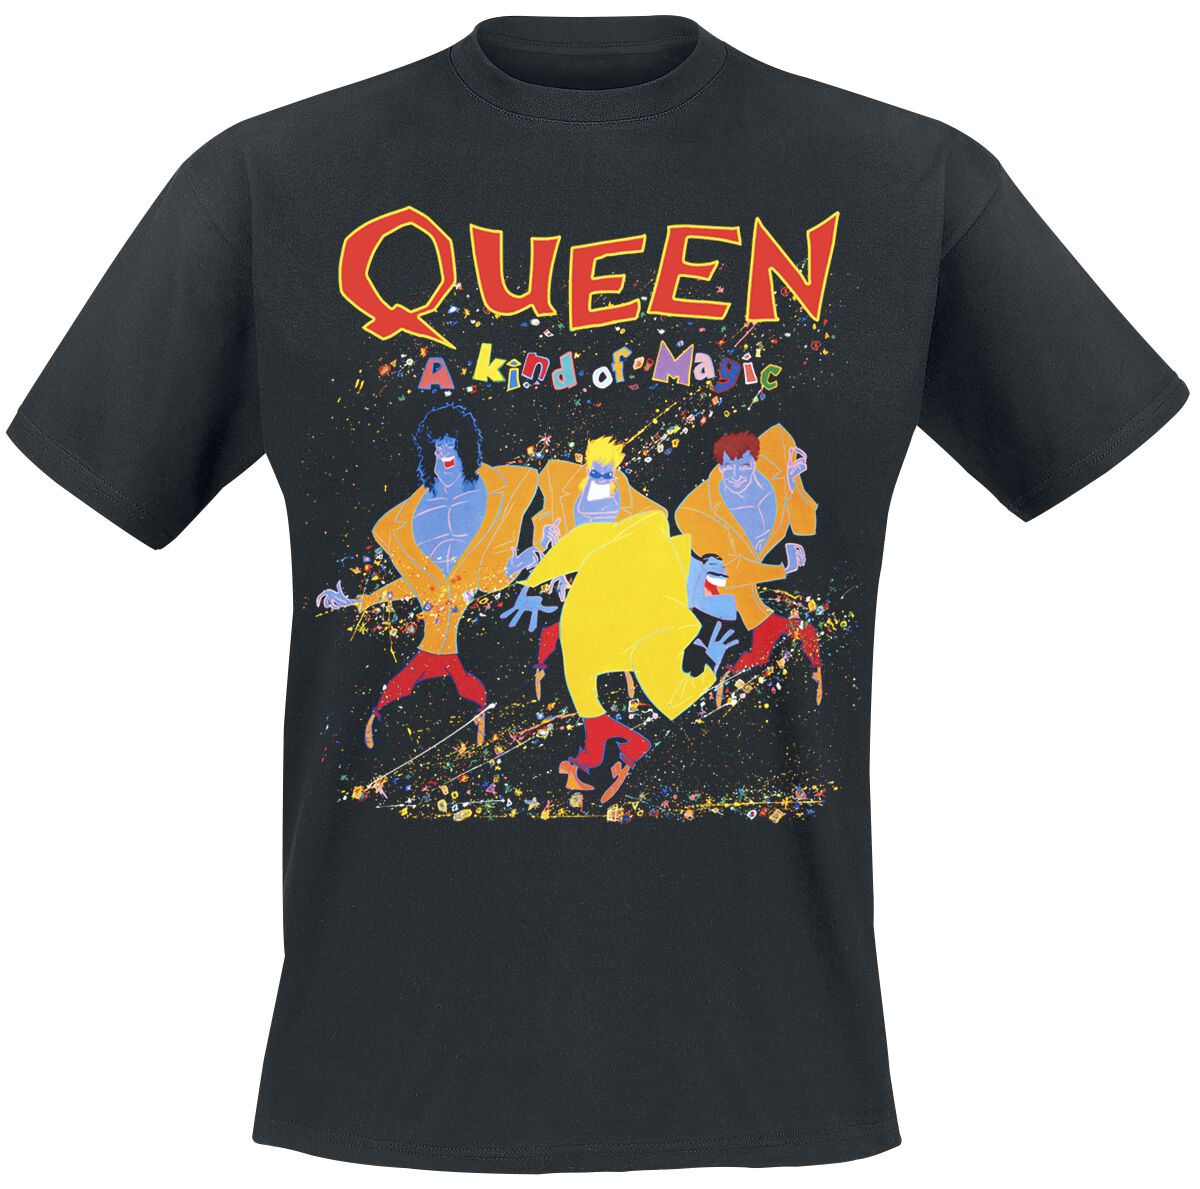 Queen T-Shirt - A Kind Of Magic - S bis 5XL - für Männer - Größe 3XL - schwarz  - Lizenziertes Merchandise!